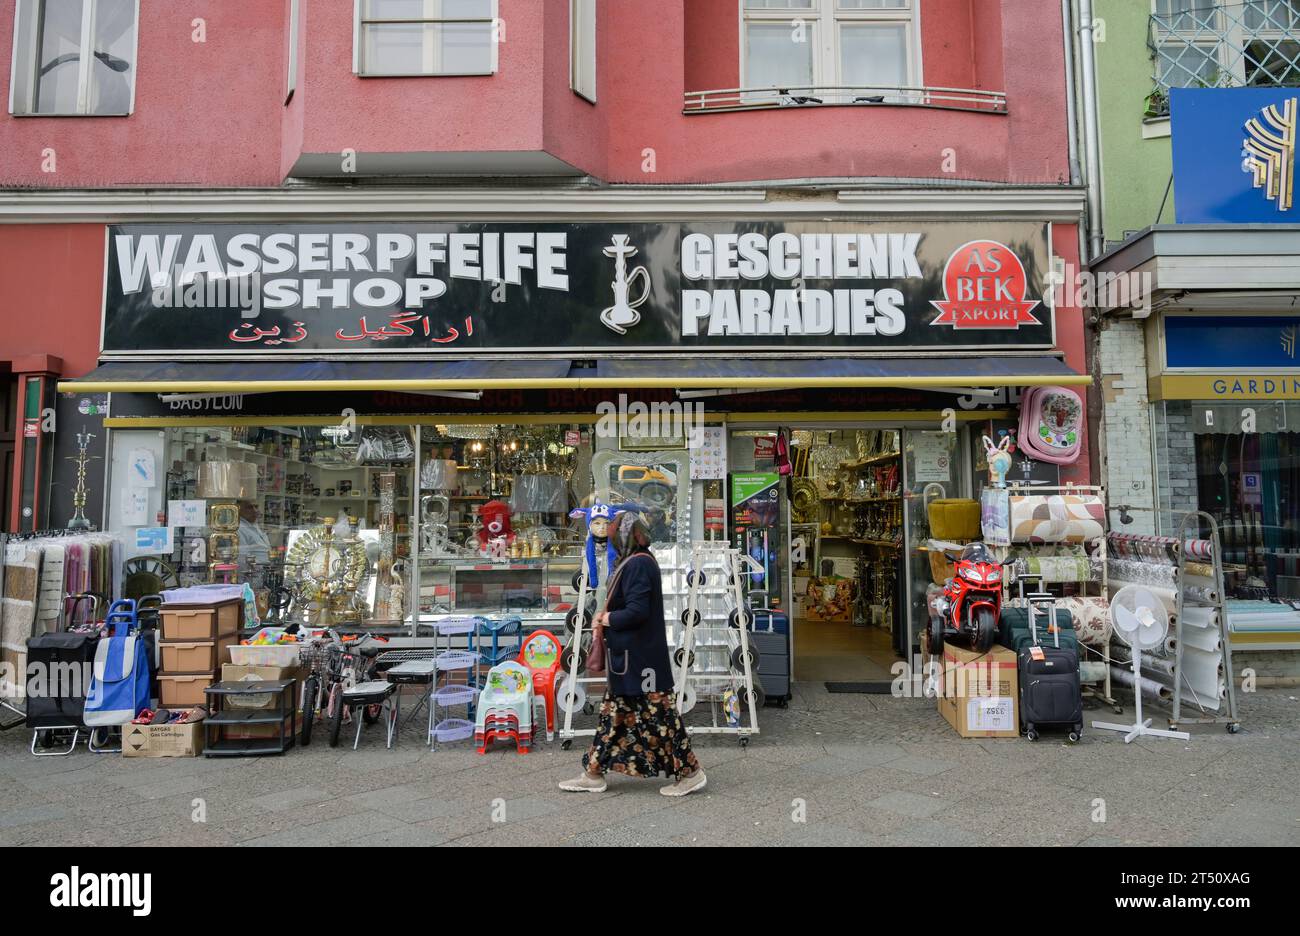 Arabischer Laden, Wasserpfeifen Shop, Import, Export, Straßenszene, Müllerstraße, Wedding, Mitte, Berlin, Deutschland *** didascalia locale *** , Berlin, Foto Stock